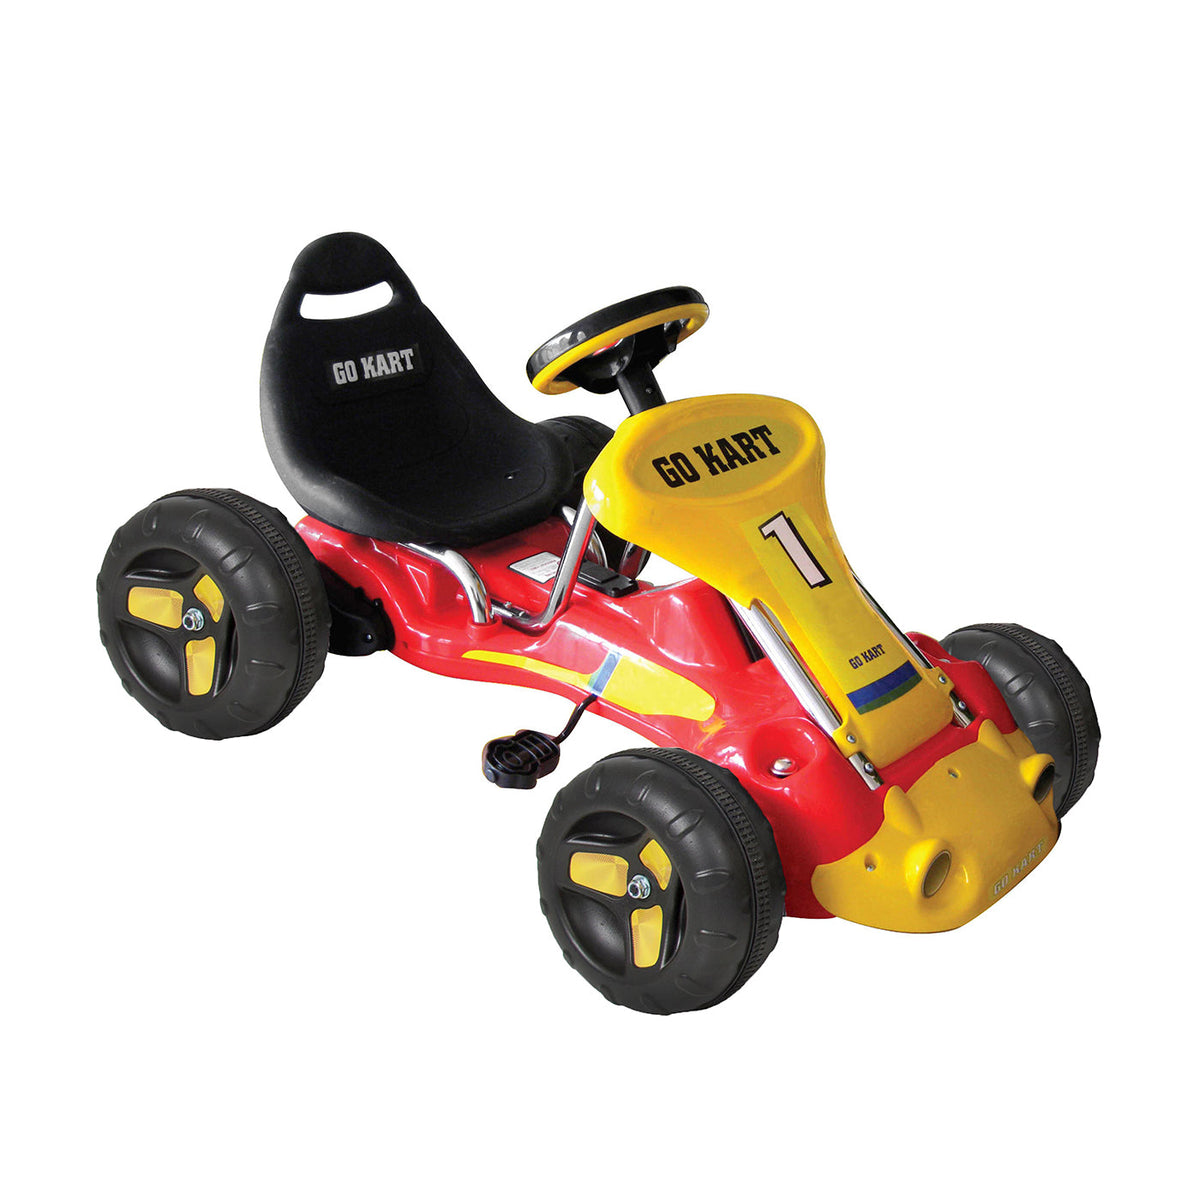 Pedal Powered Go-Kart for Children (Blue) Ride & Steer/ 4-Wheel Vehicle